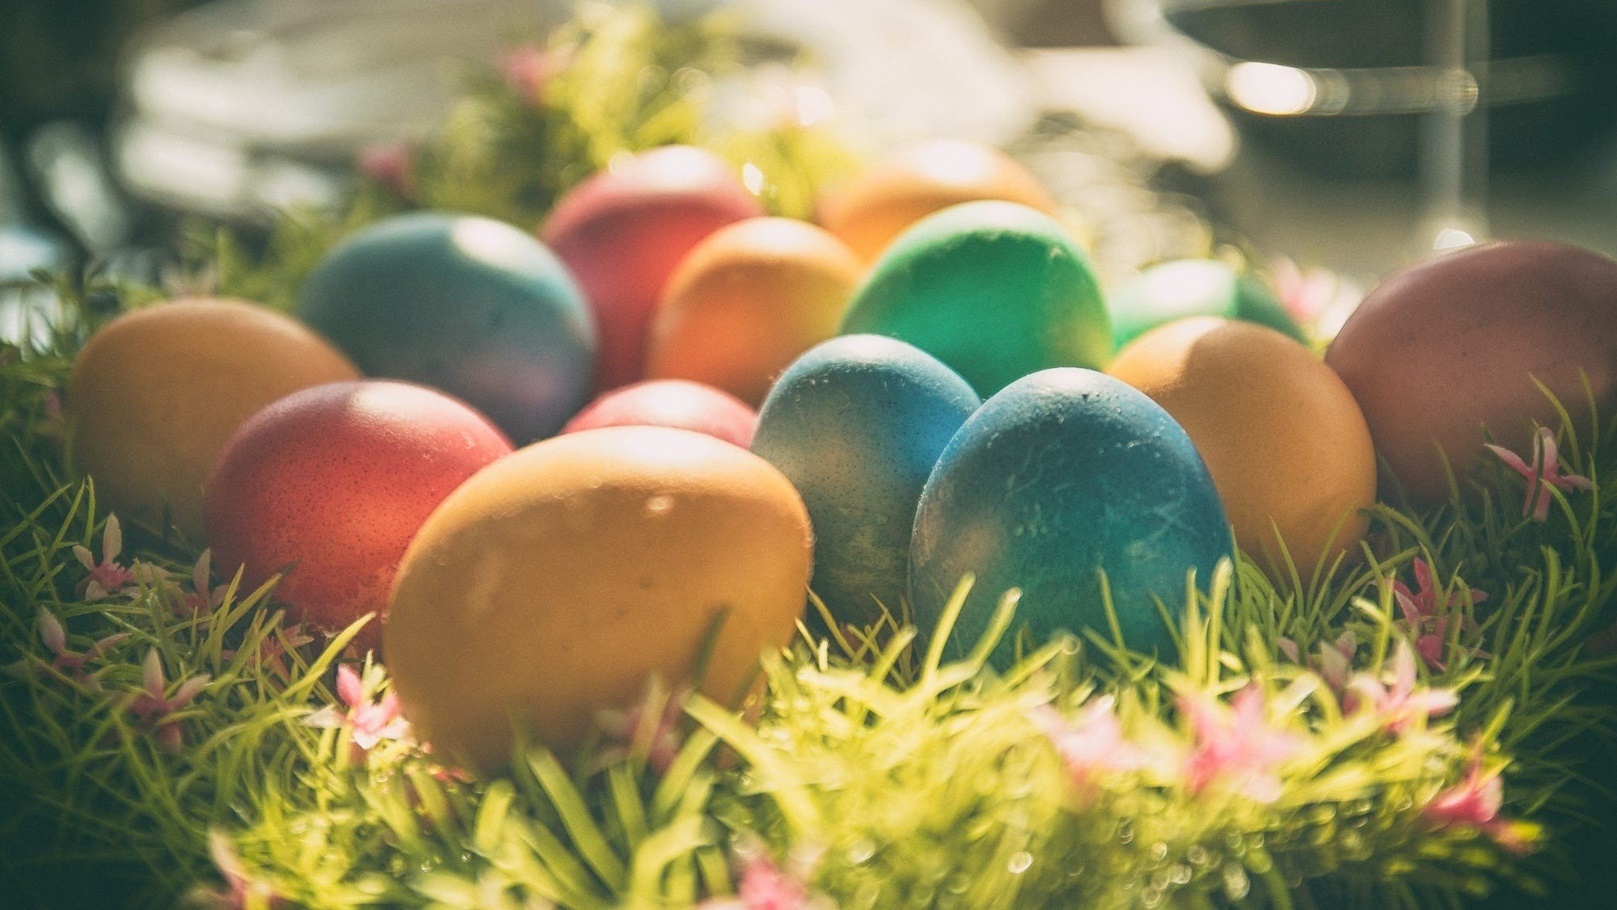 بيض الفصحeggs-easter_eggs-colorful